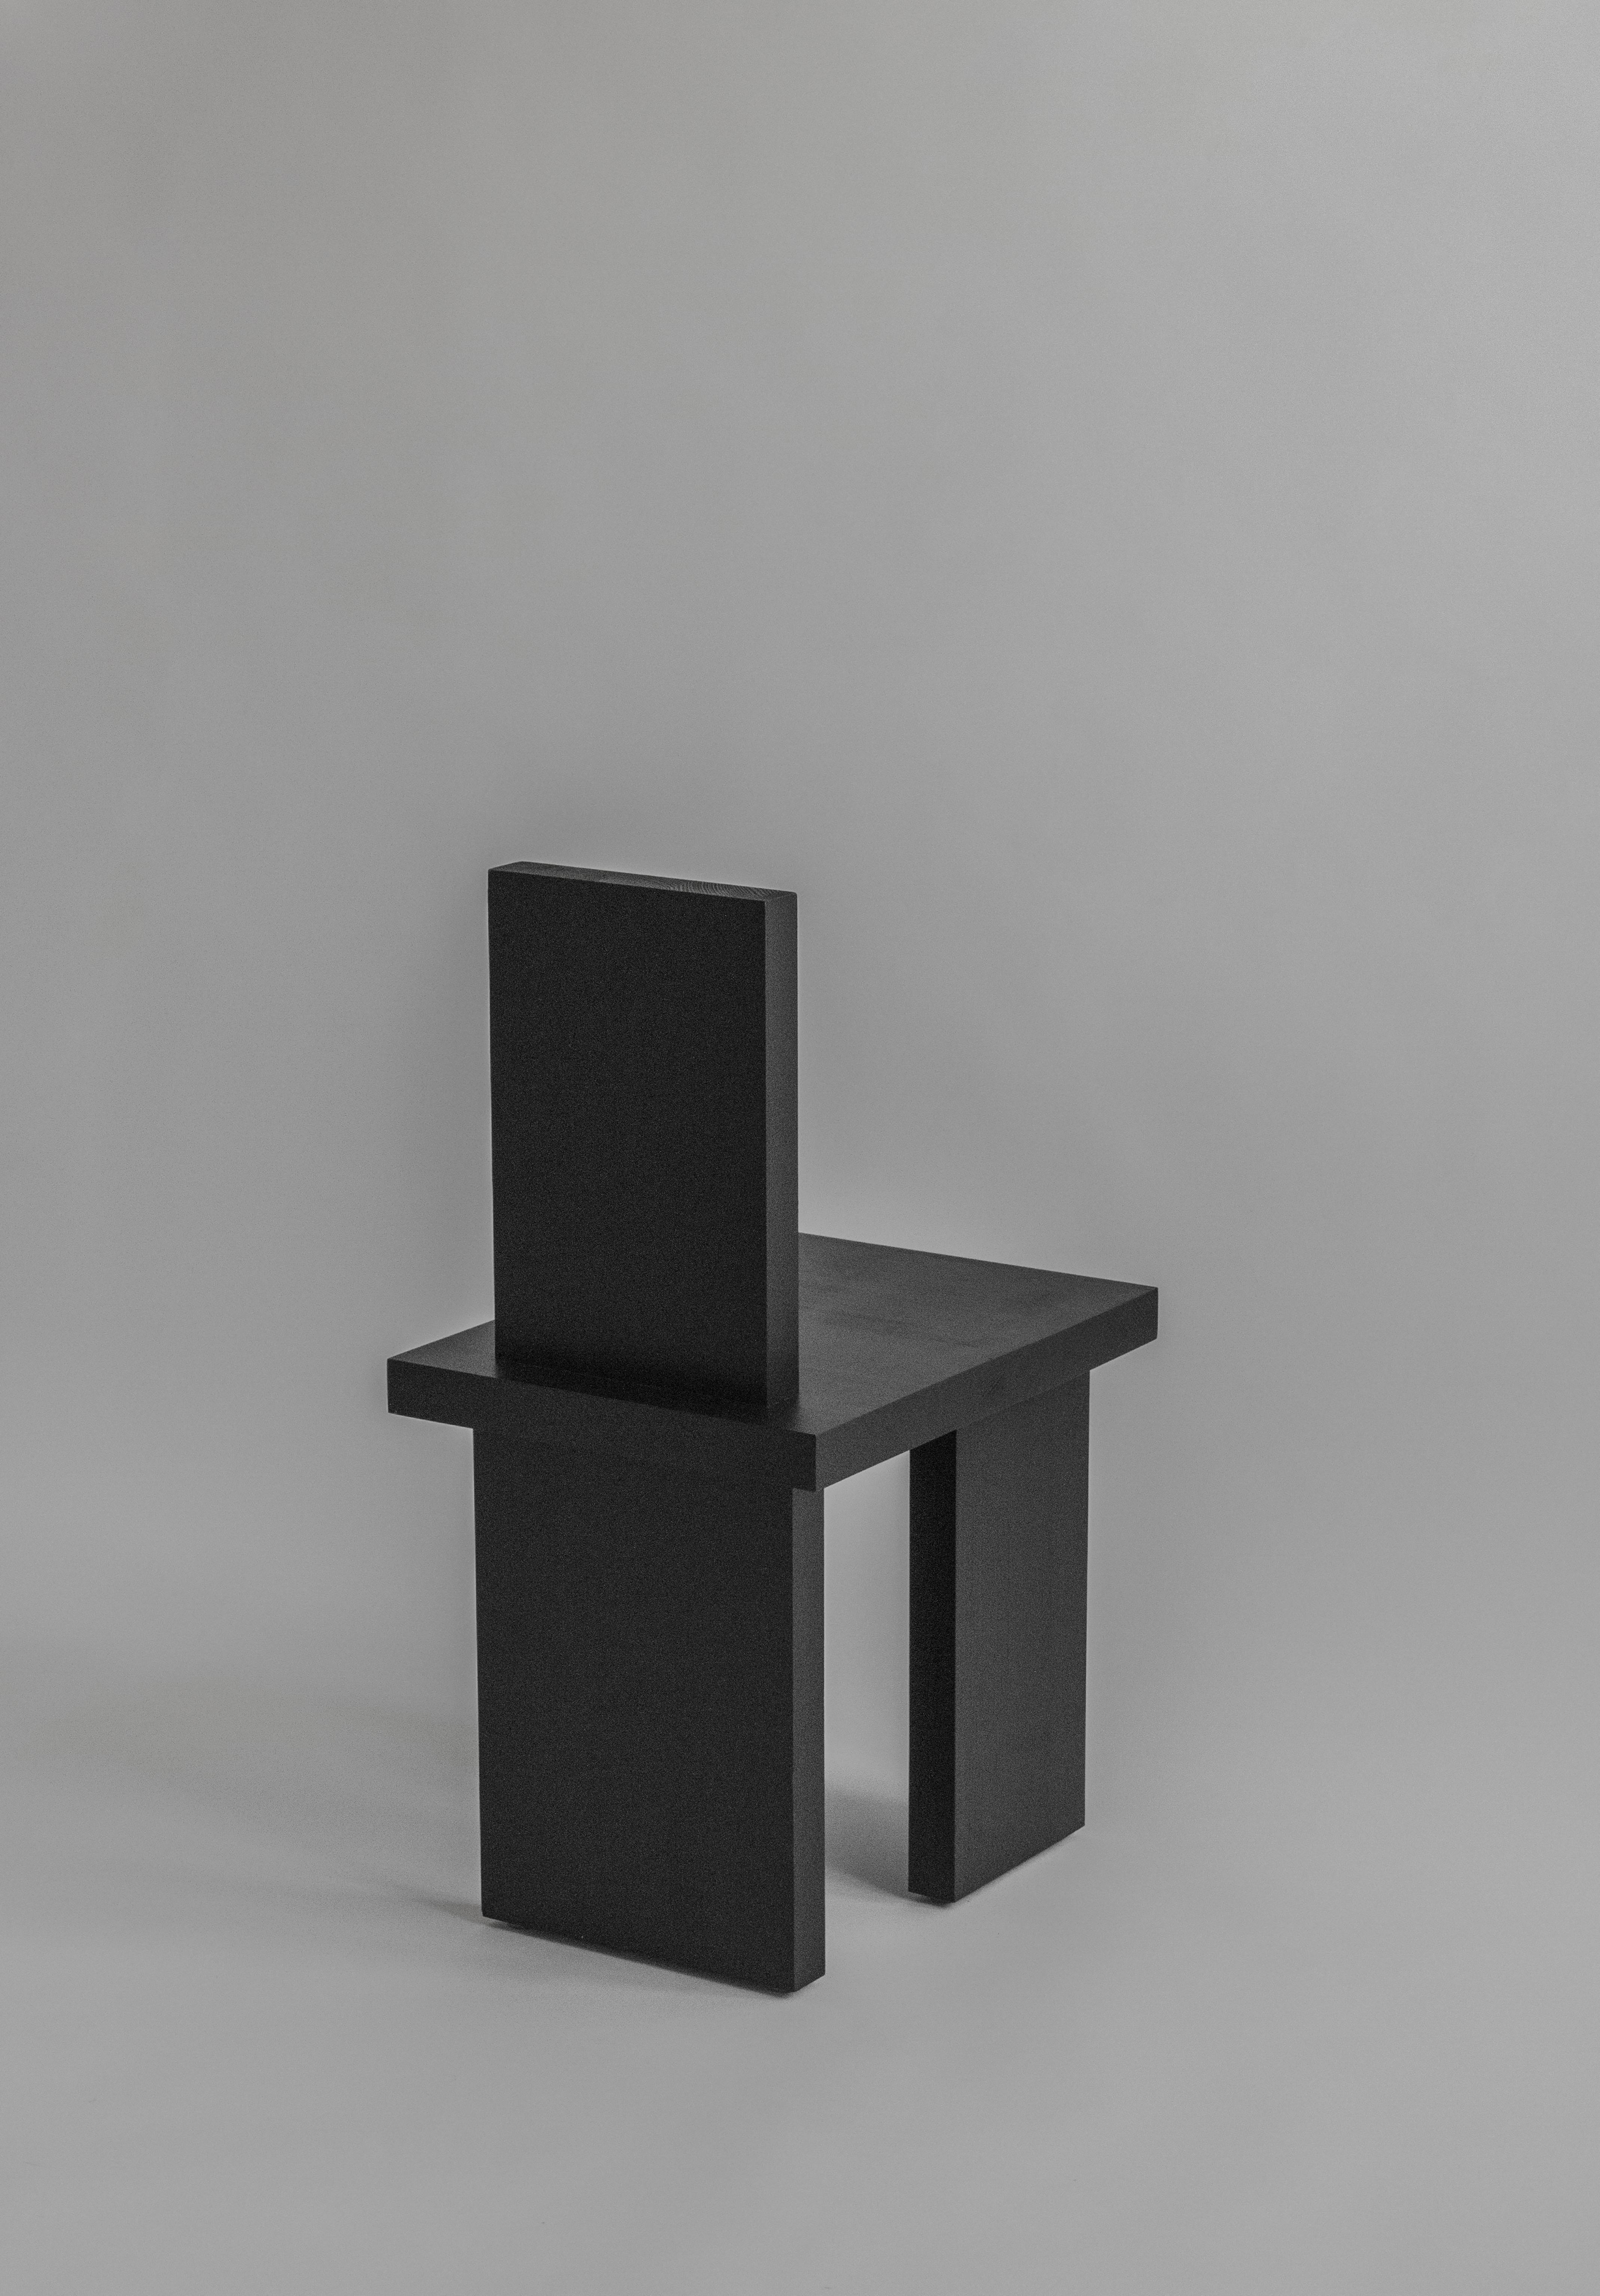 Chaise de salle à manger ItooRaba de Sizar Alexis
Signé
Dimensions : longueur 36 x largeur 47 x hauteur 77cm
Hauteur du siège 42cm

Disponible en noir teinté, blanc et pin naturel.

Une série de meubles qui adopte des formes géométriques. Inspiré